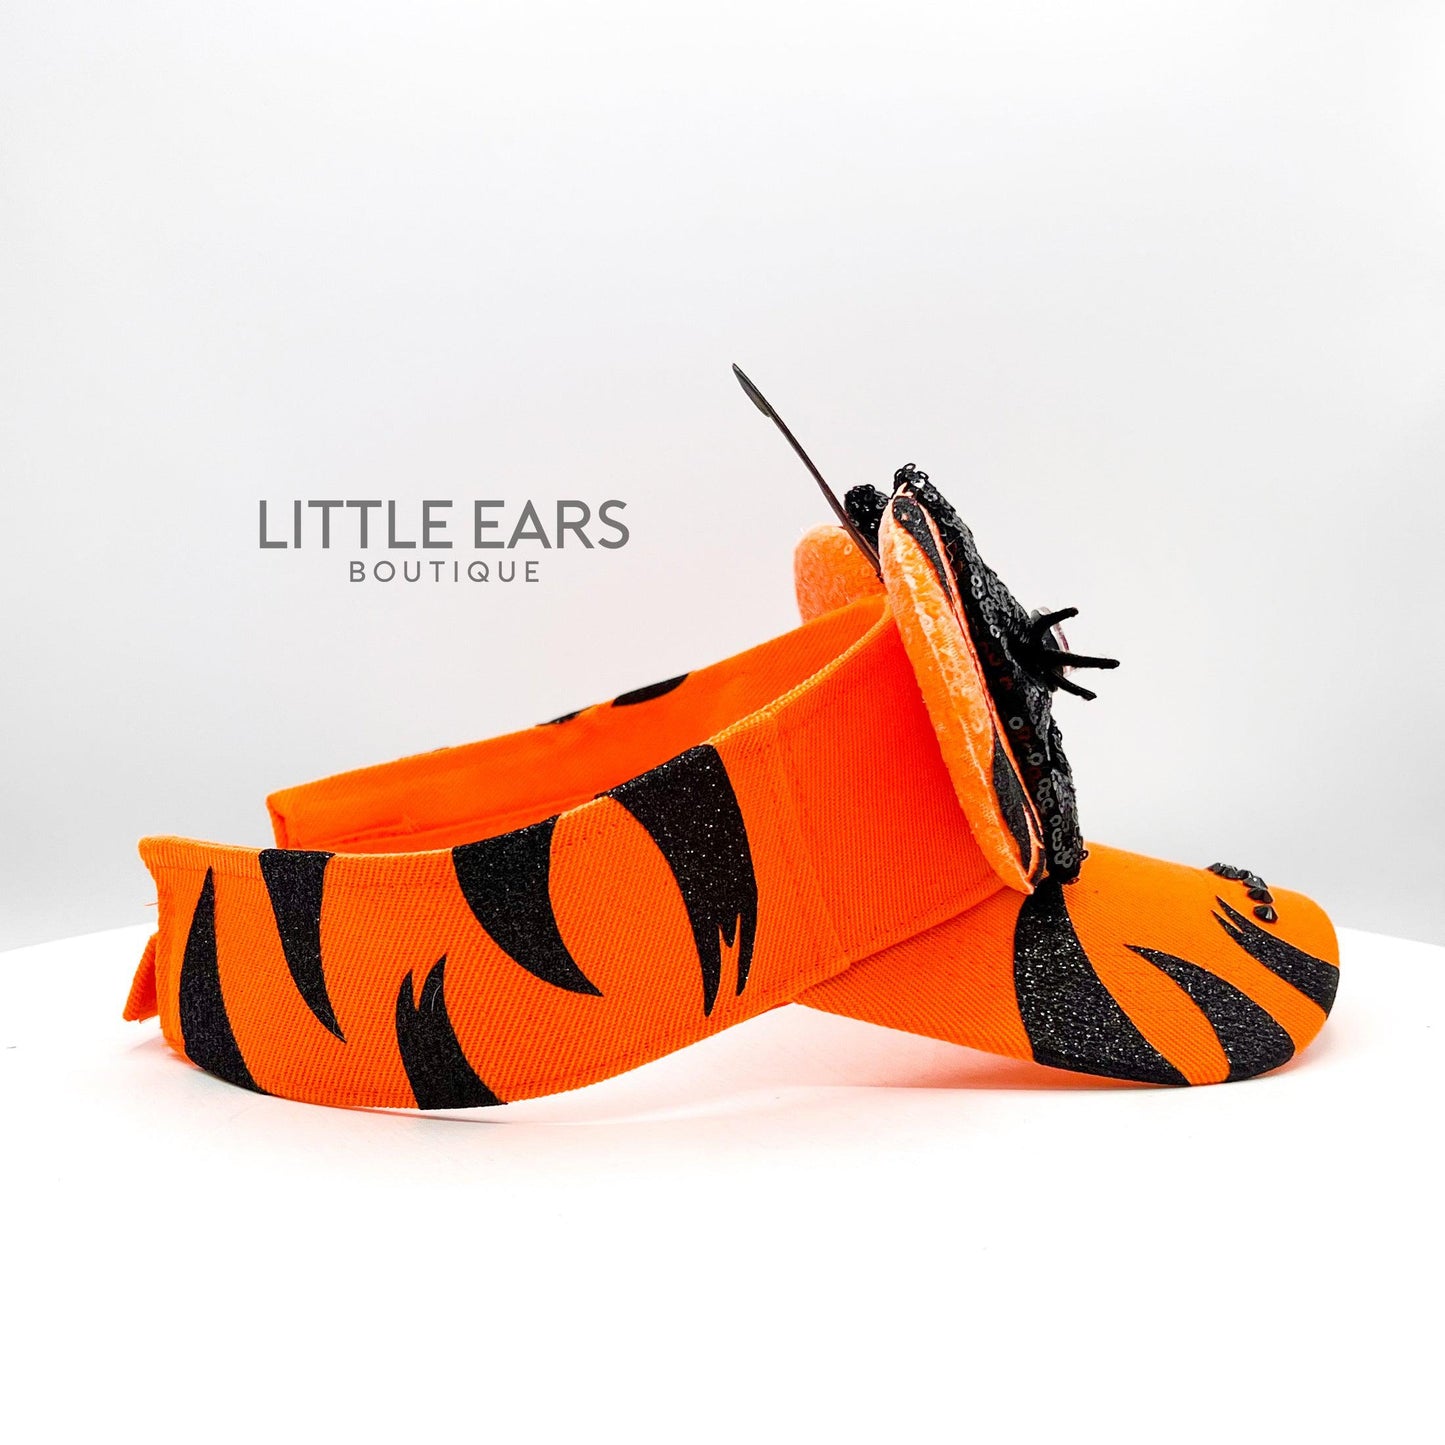 Tiger Mickey Visor- mickey ears disney headband mouse